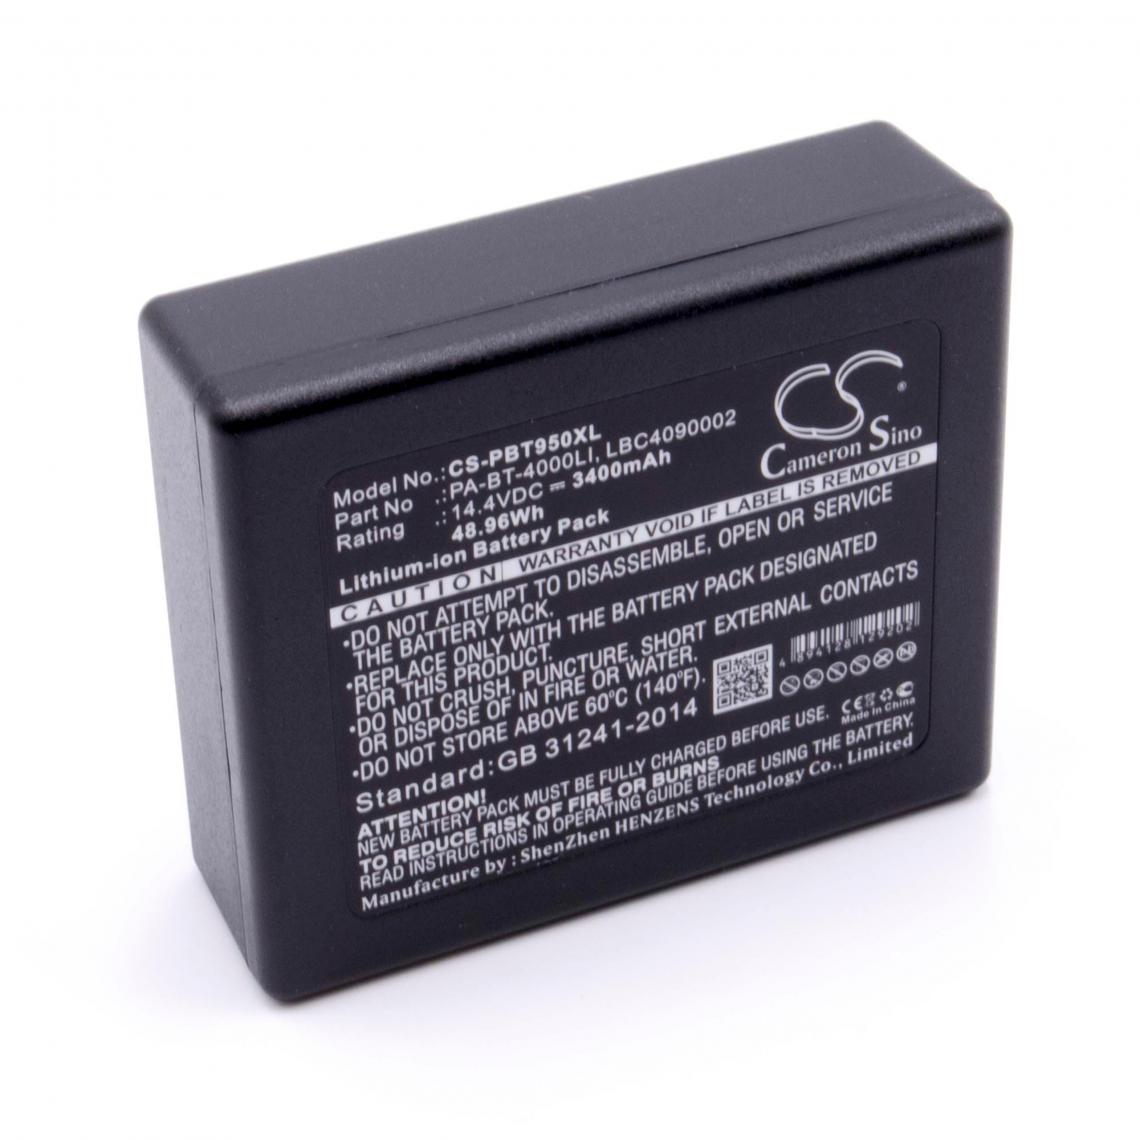 Vhbw - vhbw Li-Ion batterie 3400mAh (14.4V) pour imprimante photocopieur scanner imprimante à étiquette Brother TD-2130NSA - Imprimante Jet d'encre